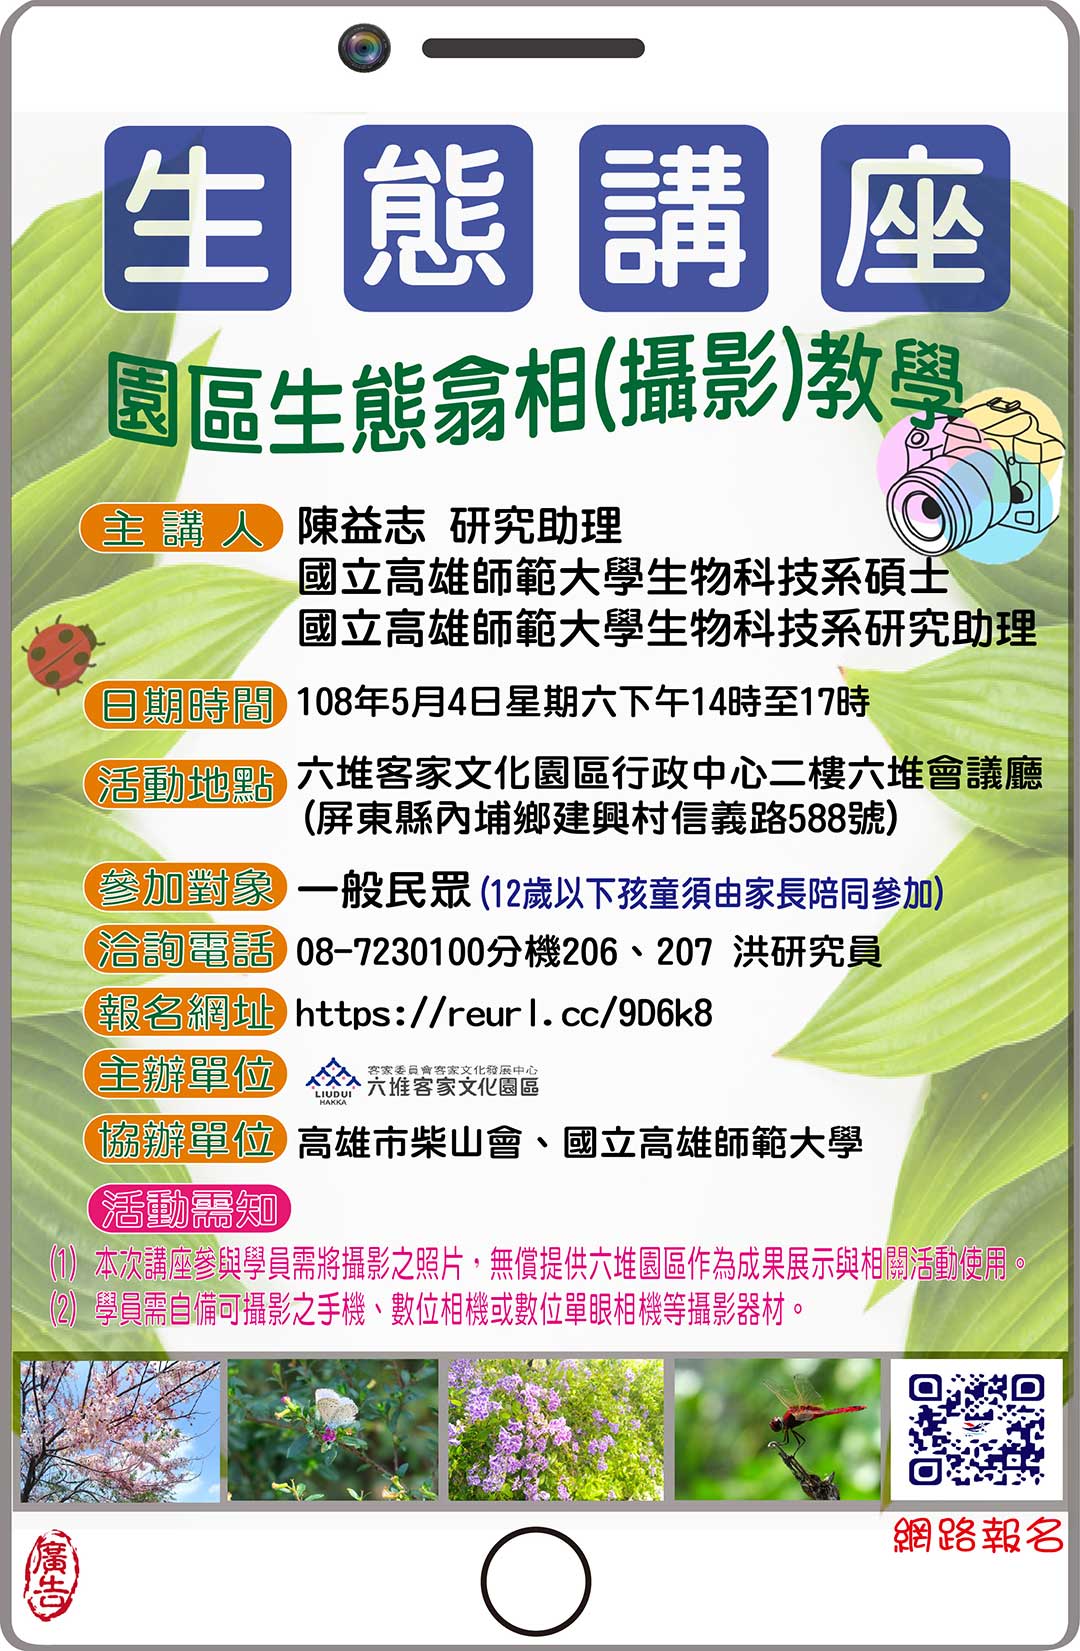 園區生態翕相【hibˋ xiong】(攝影)教學 海報